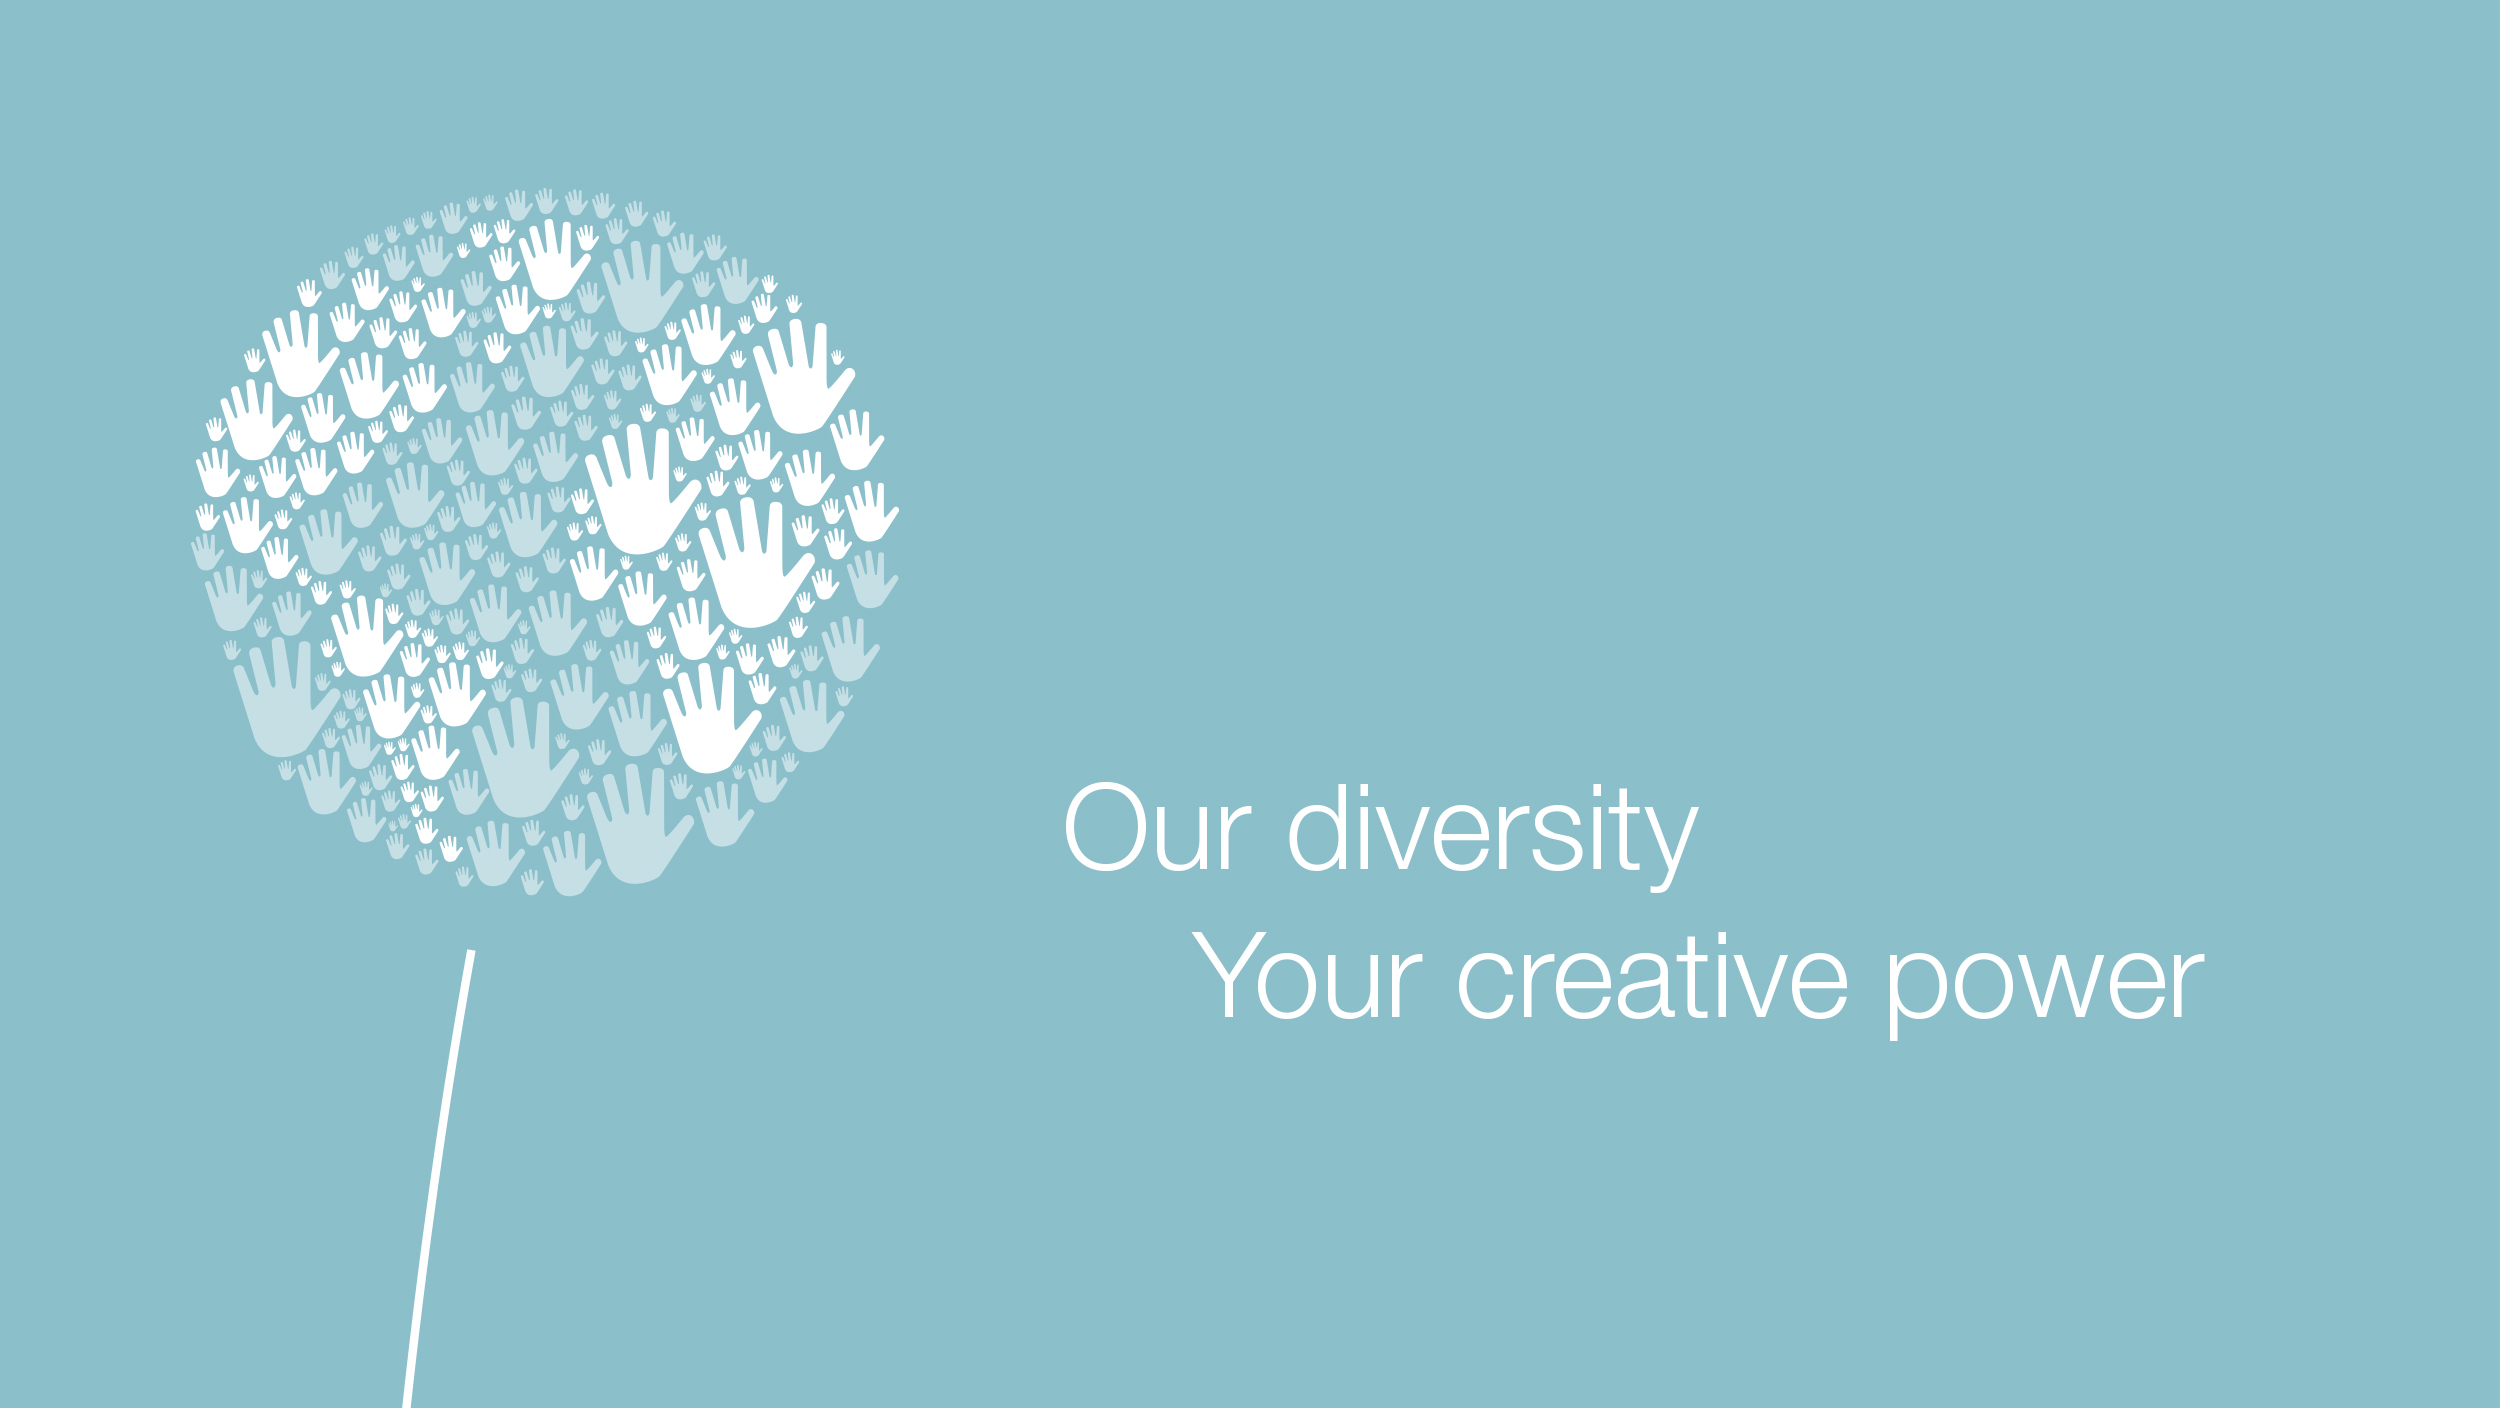 Pusteblume aus Händen, daneben der Spruch: Our diversity Your creative power